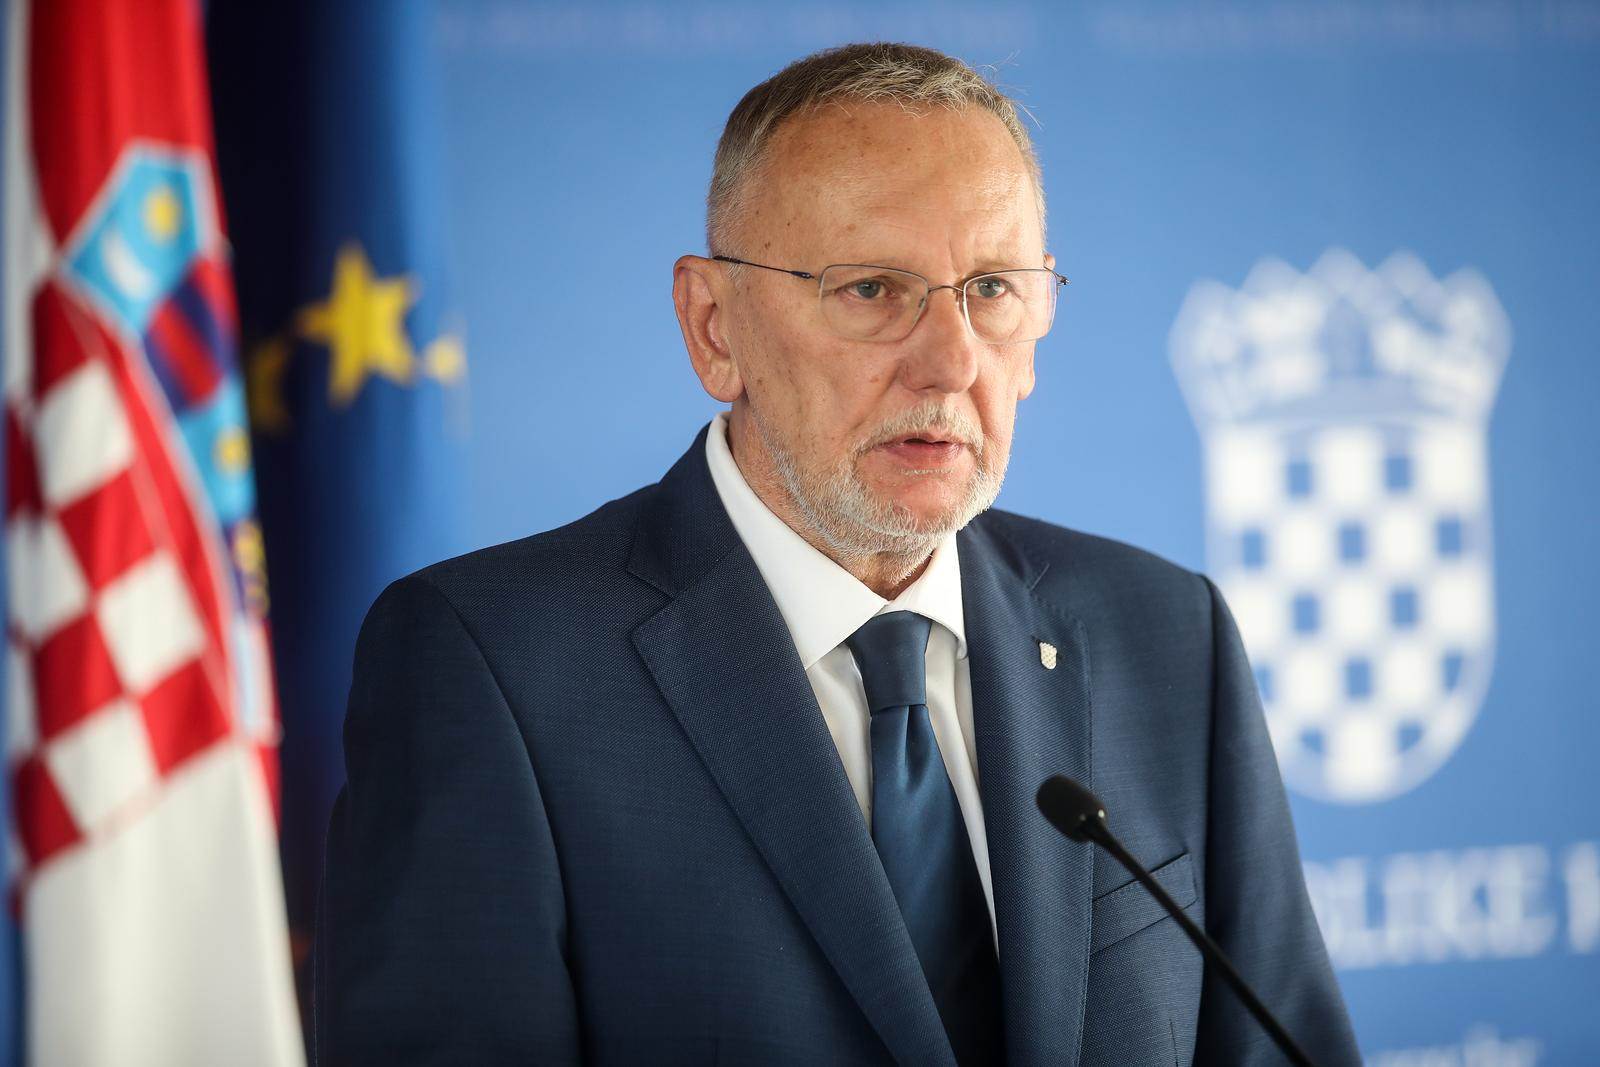  Davor Božinović, hrvatski ministar unutarnjih poslova 